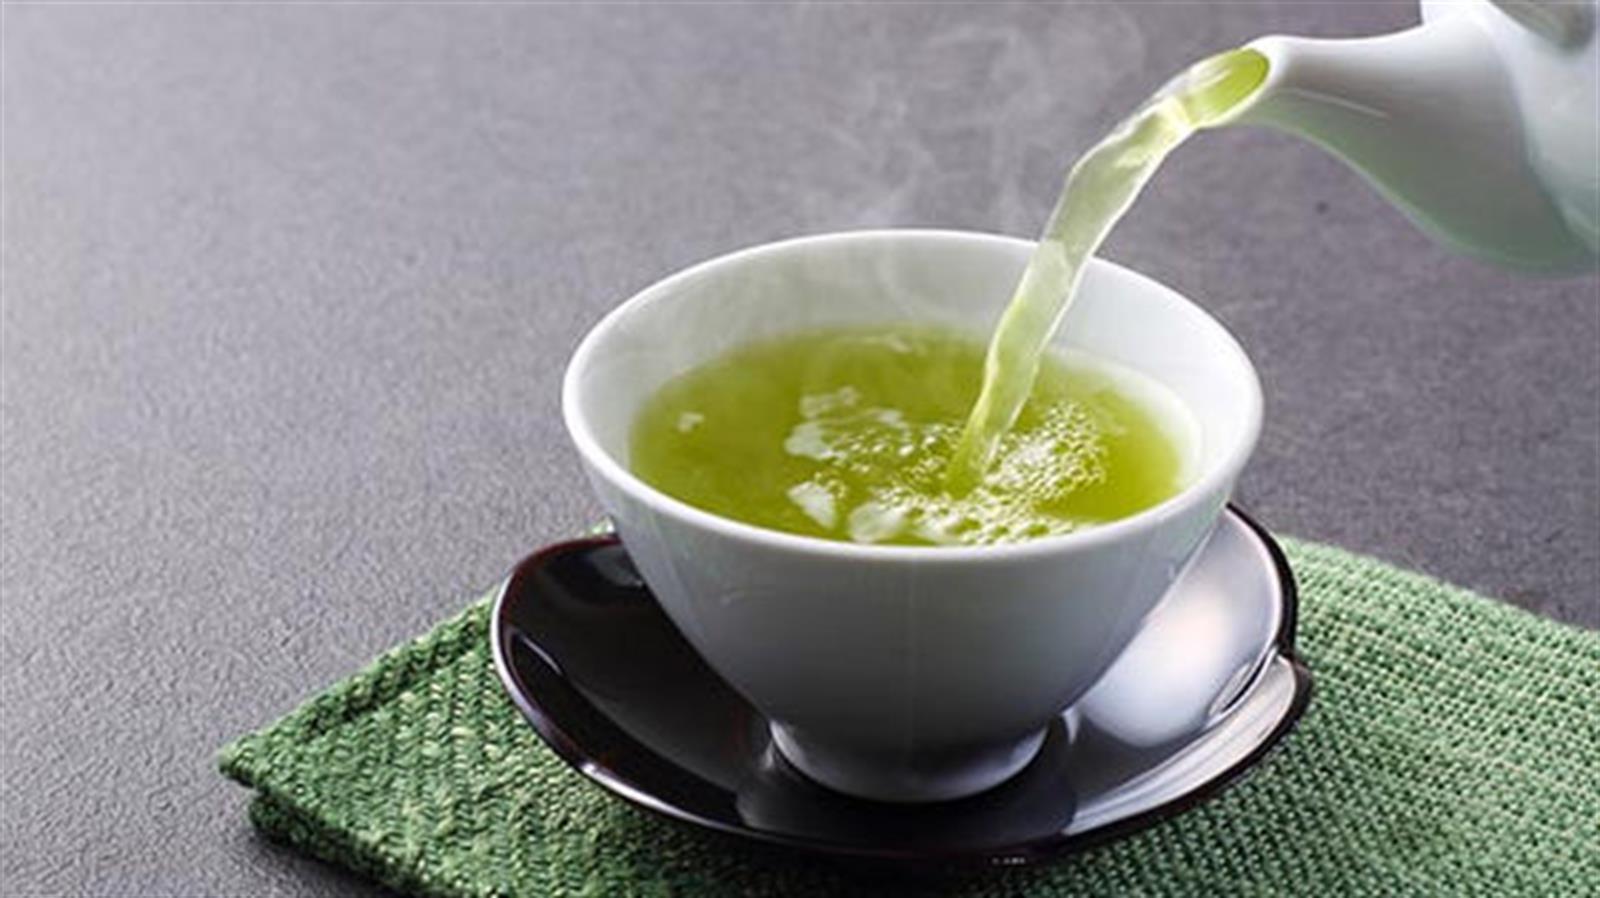 研究: 每天喝綠茶可增加天然抗癌蛋白  有助消滅癌細胞